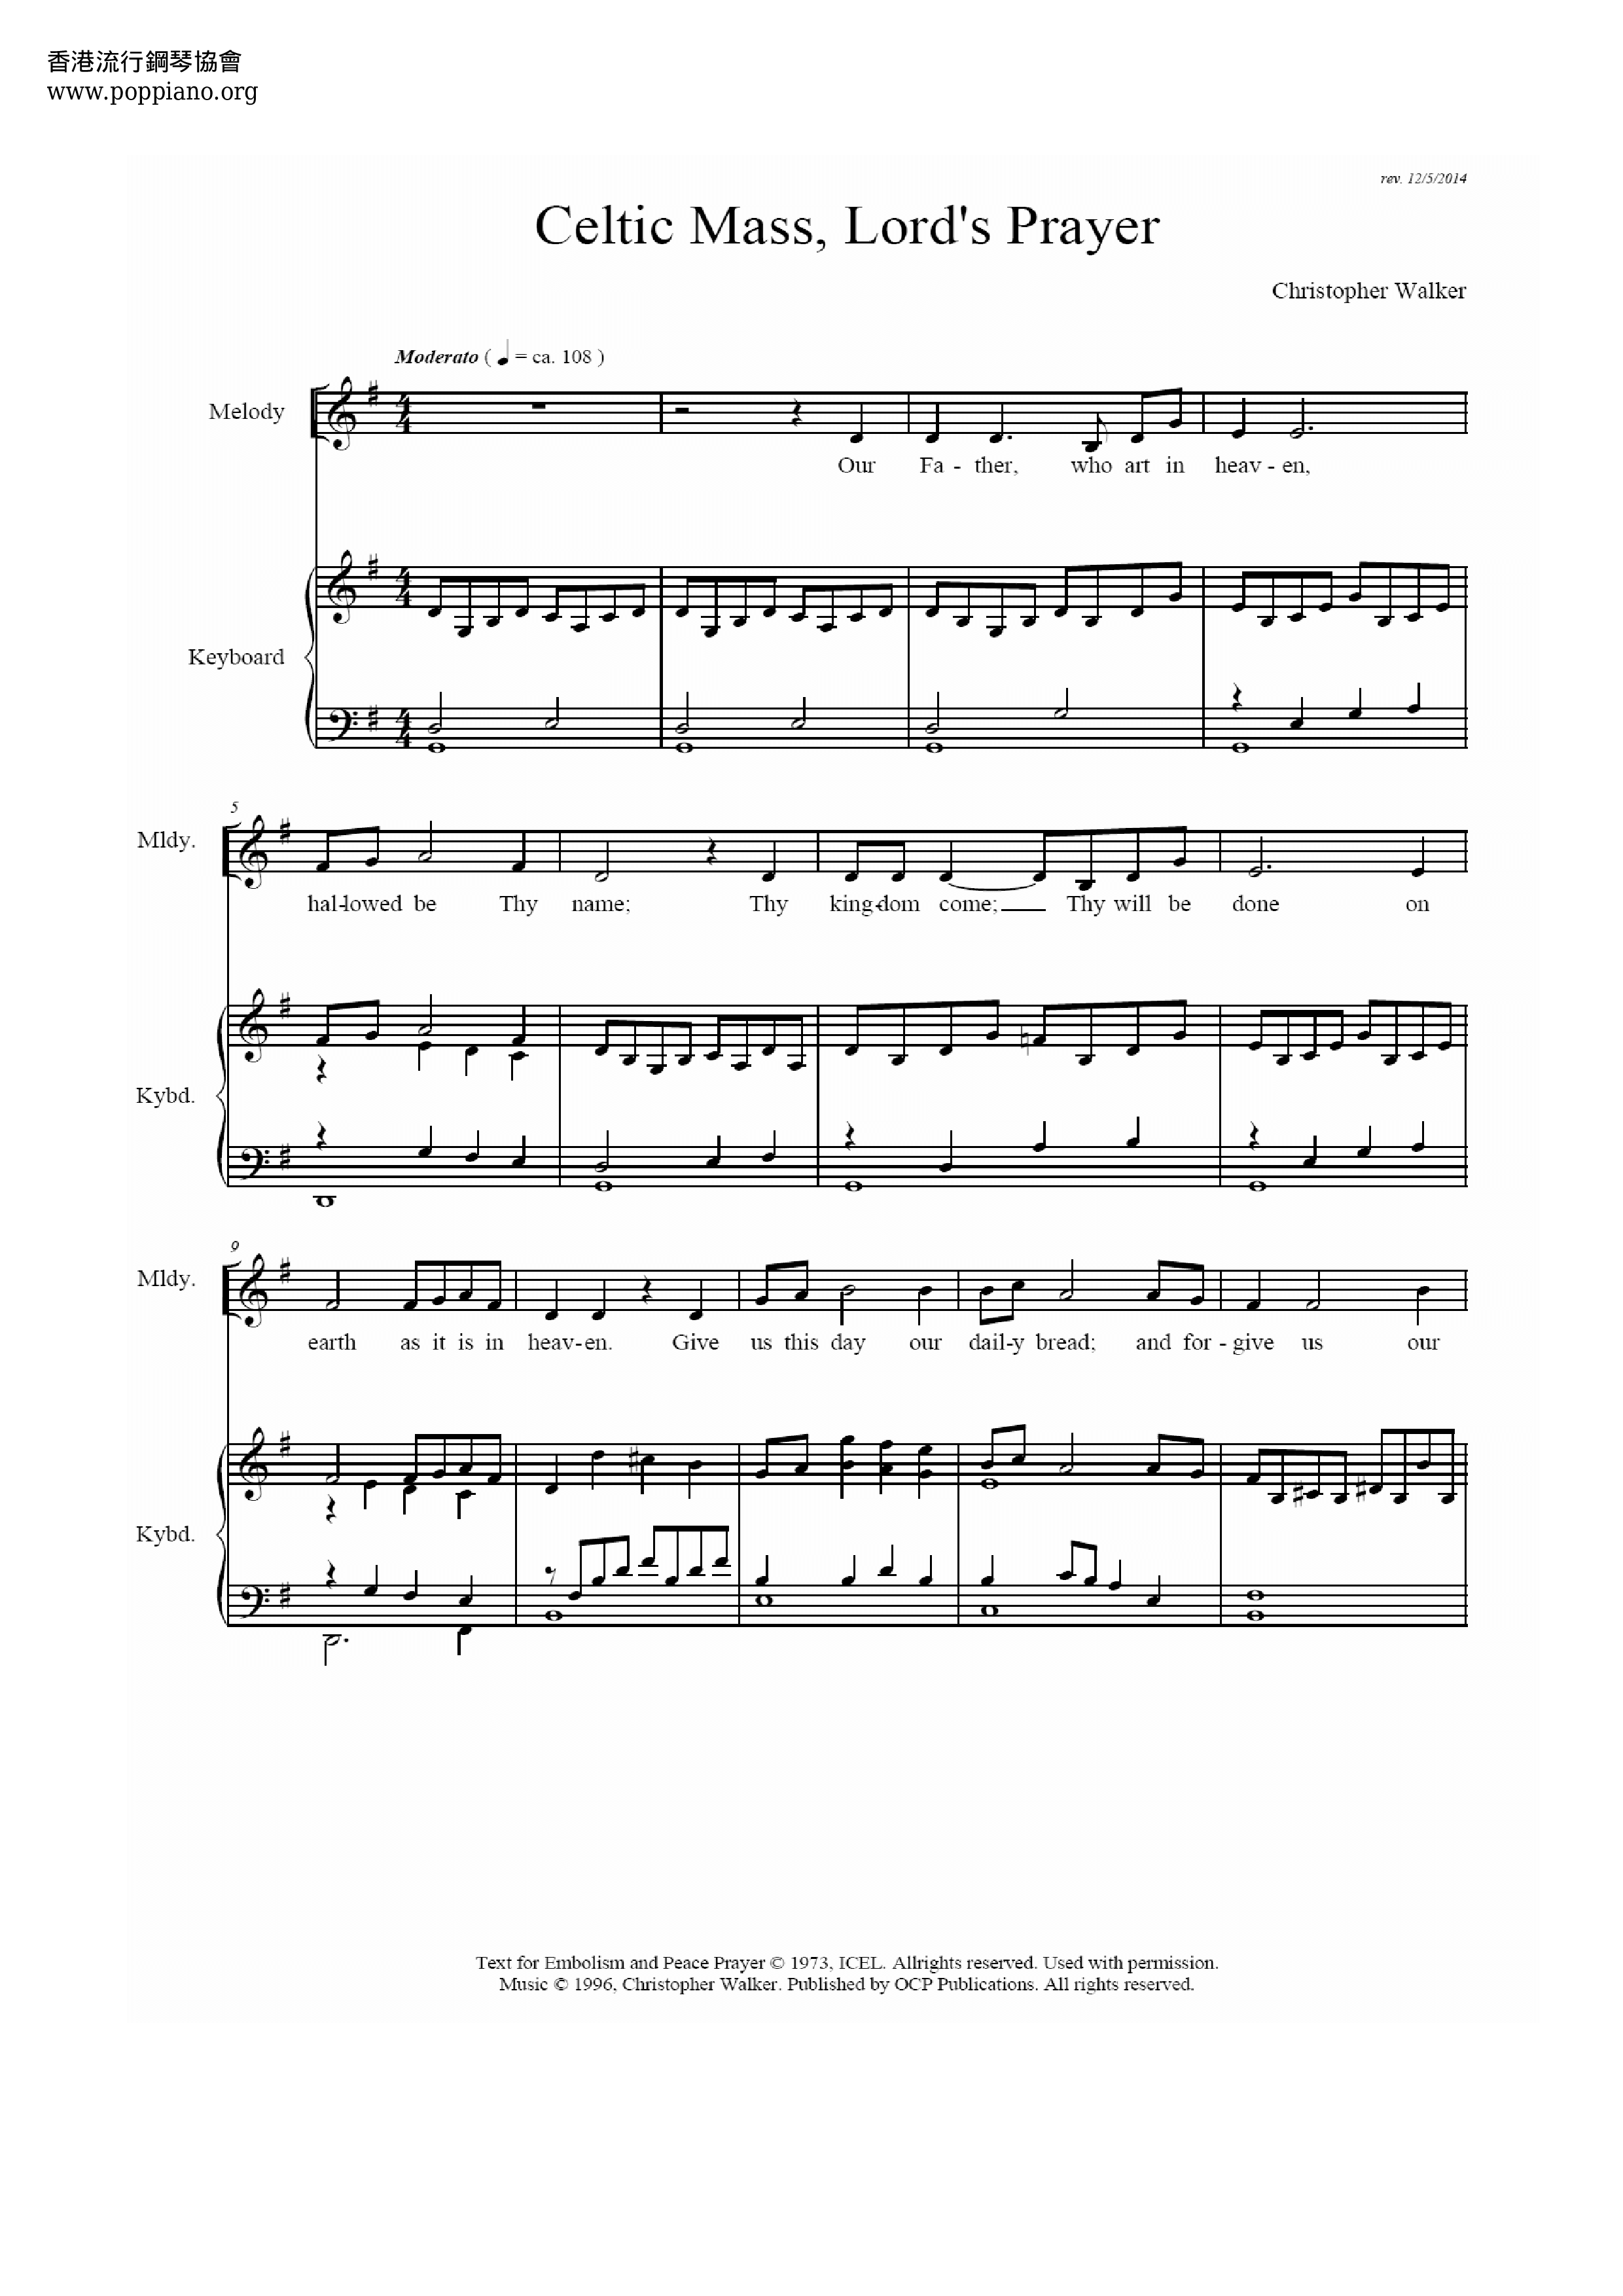 Lord's Prayer  Score